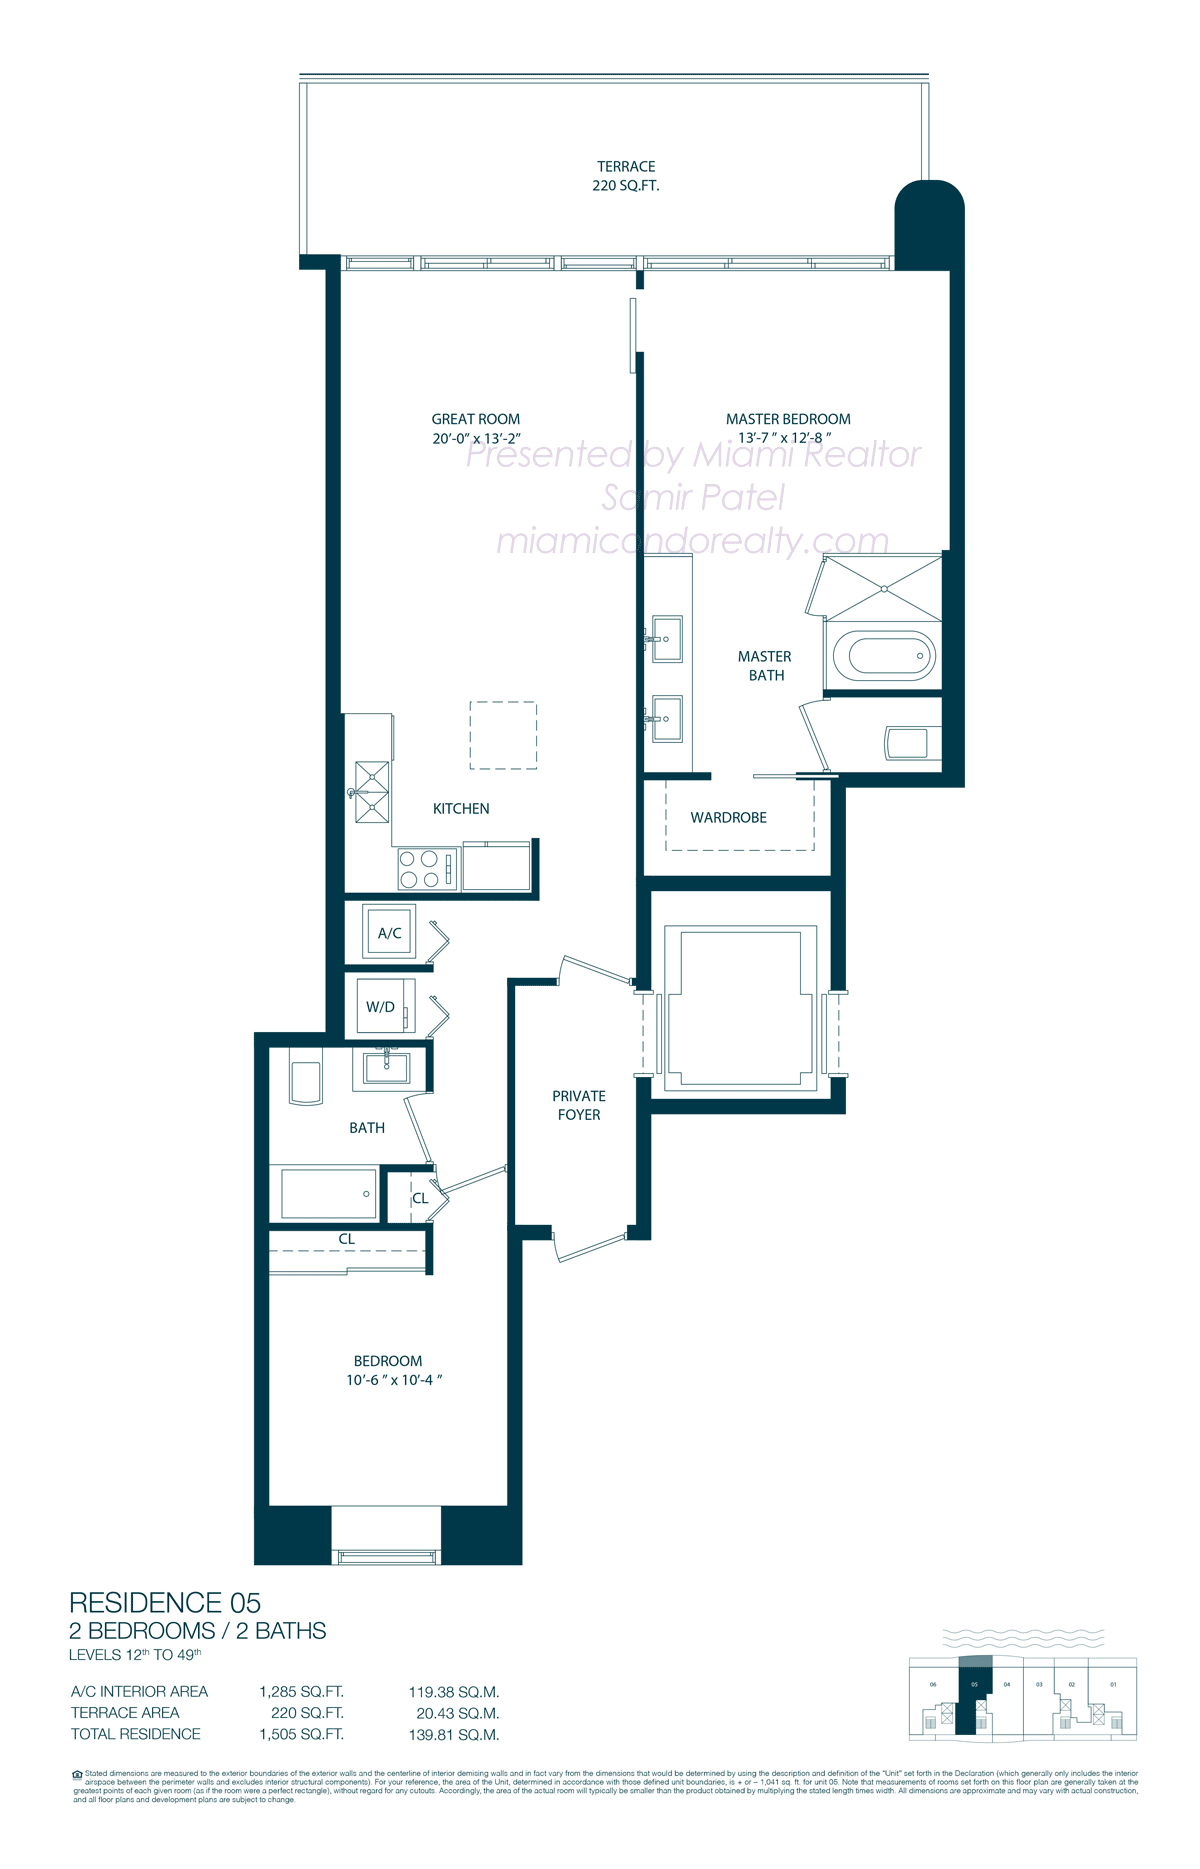 Floorplan of One Paraiso Condominium of 05 Line in Building